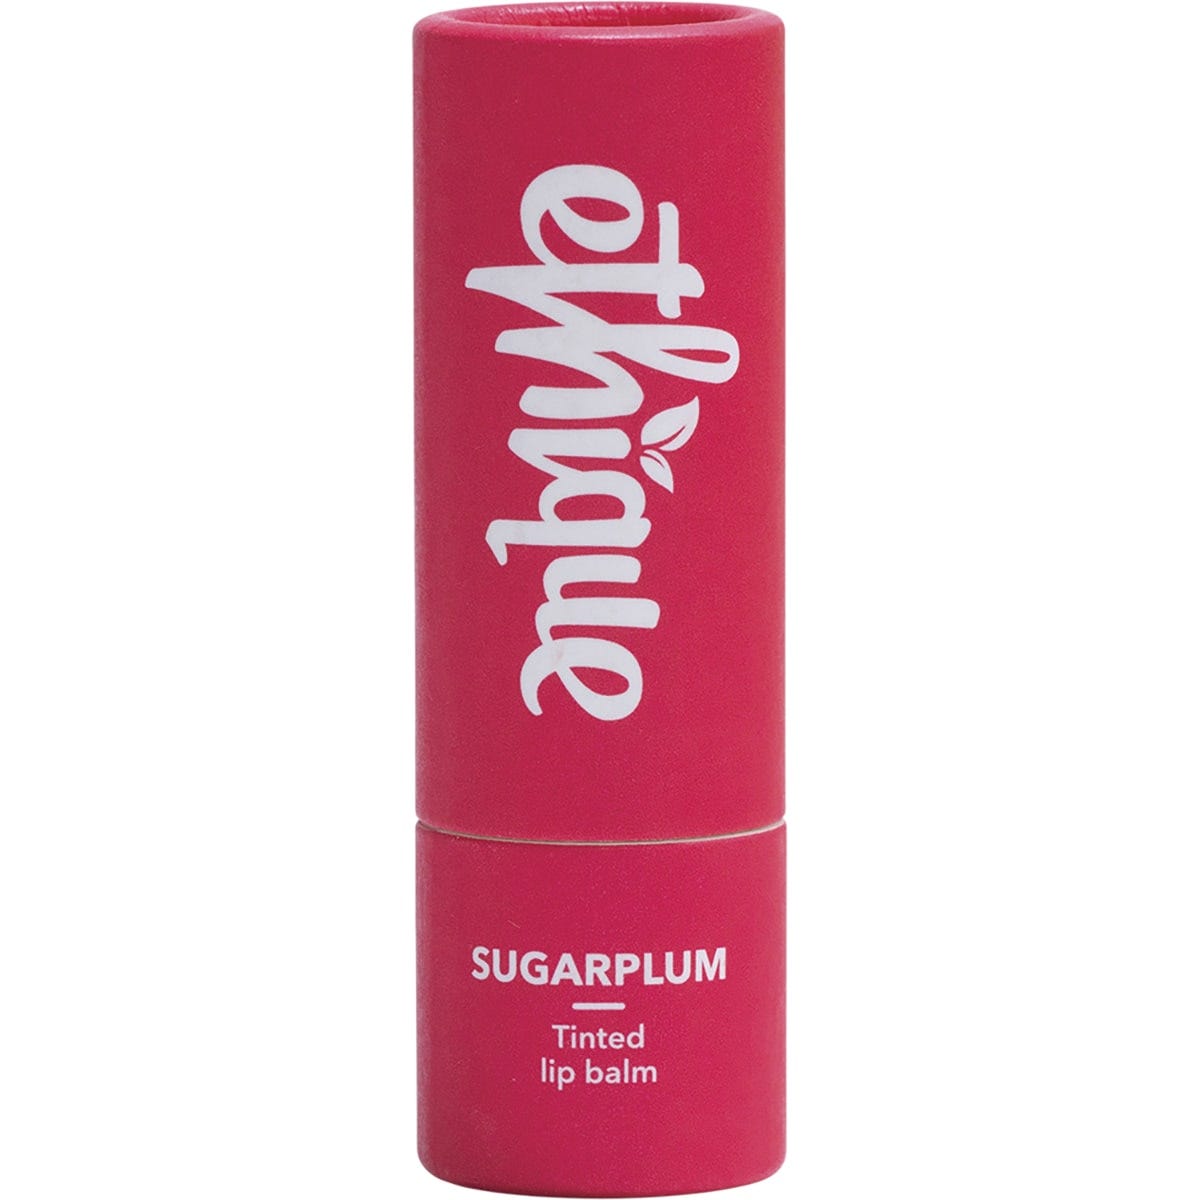 Ethique Lip Balm Sugarplum Tinted